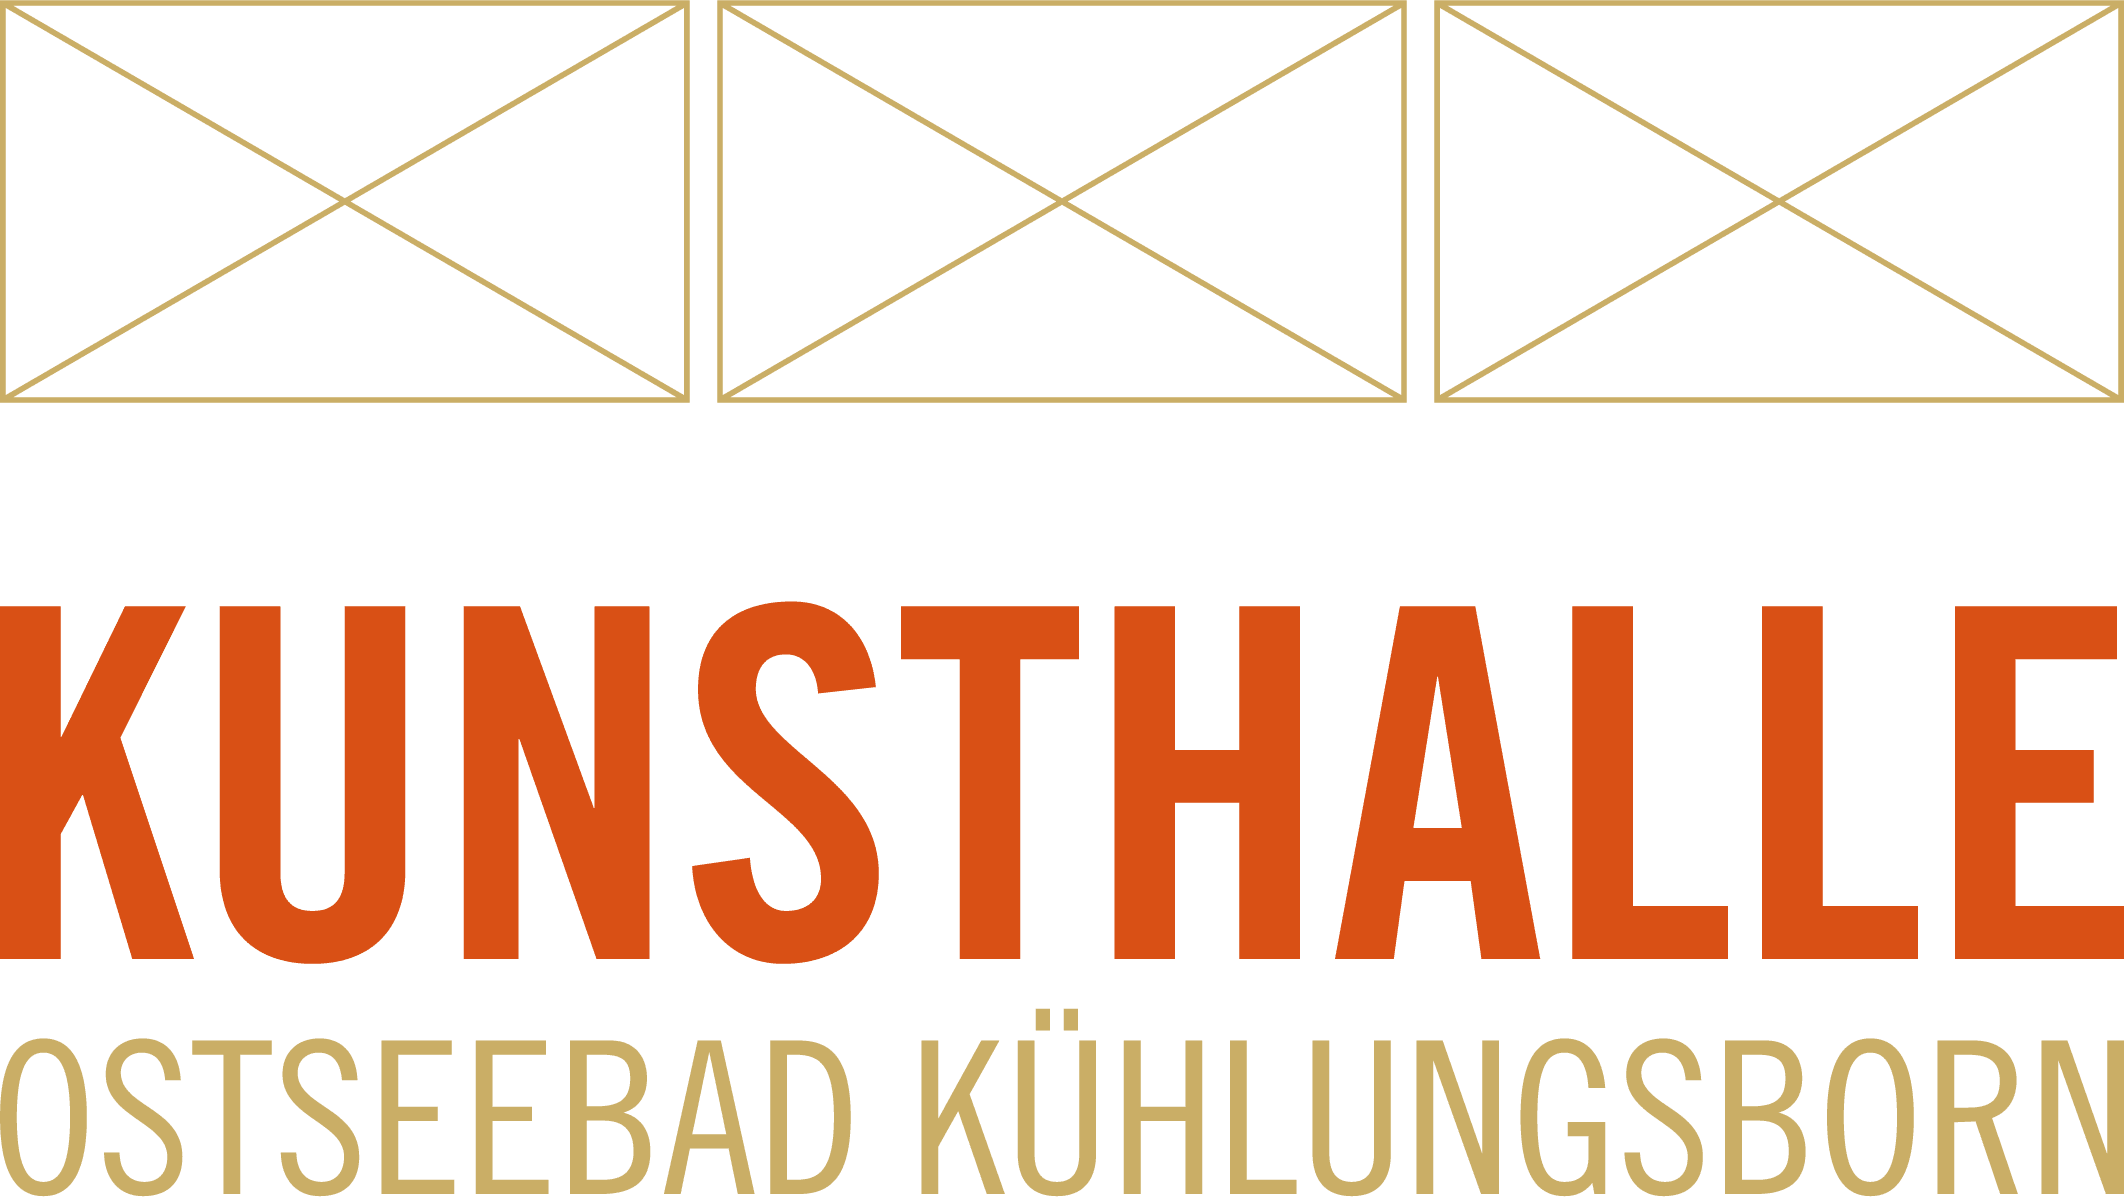 LOGO Kunsthalle Kühlungsborn_orange gold